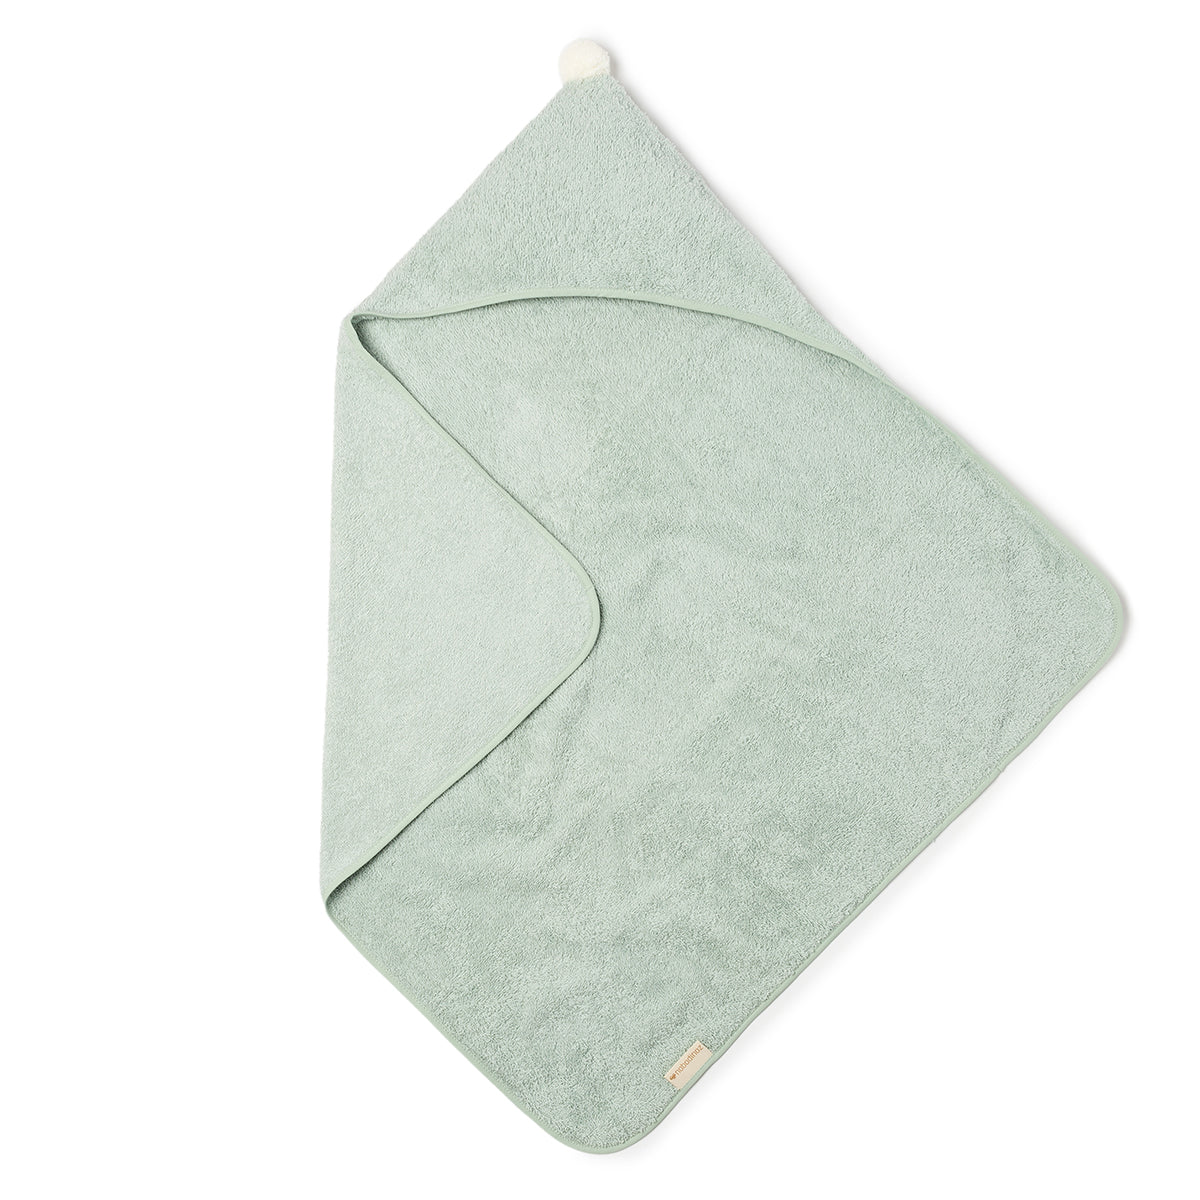 Verwen je baby na het badje, douchen of zwemmen met de Nobodinoz so cute baby badcape green. De zachte groene stof van de badcape voelt lekker aan en zorgt ervoor dat jouw baby snel weer helemaal droog is. VanZus.